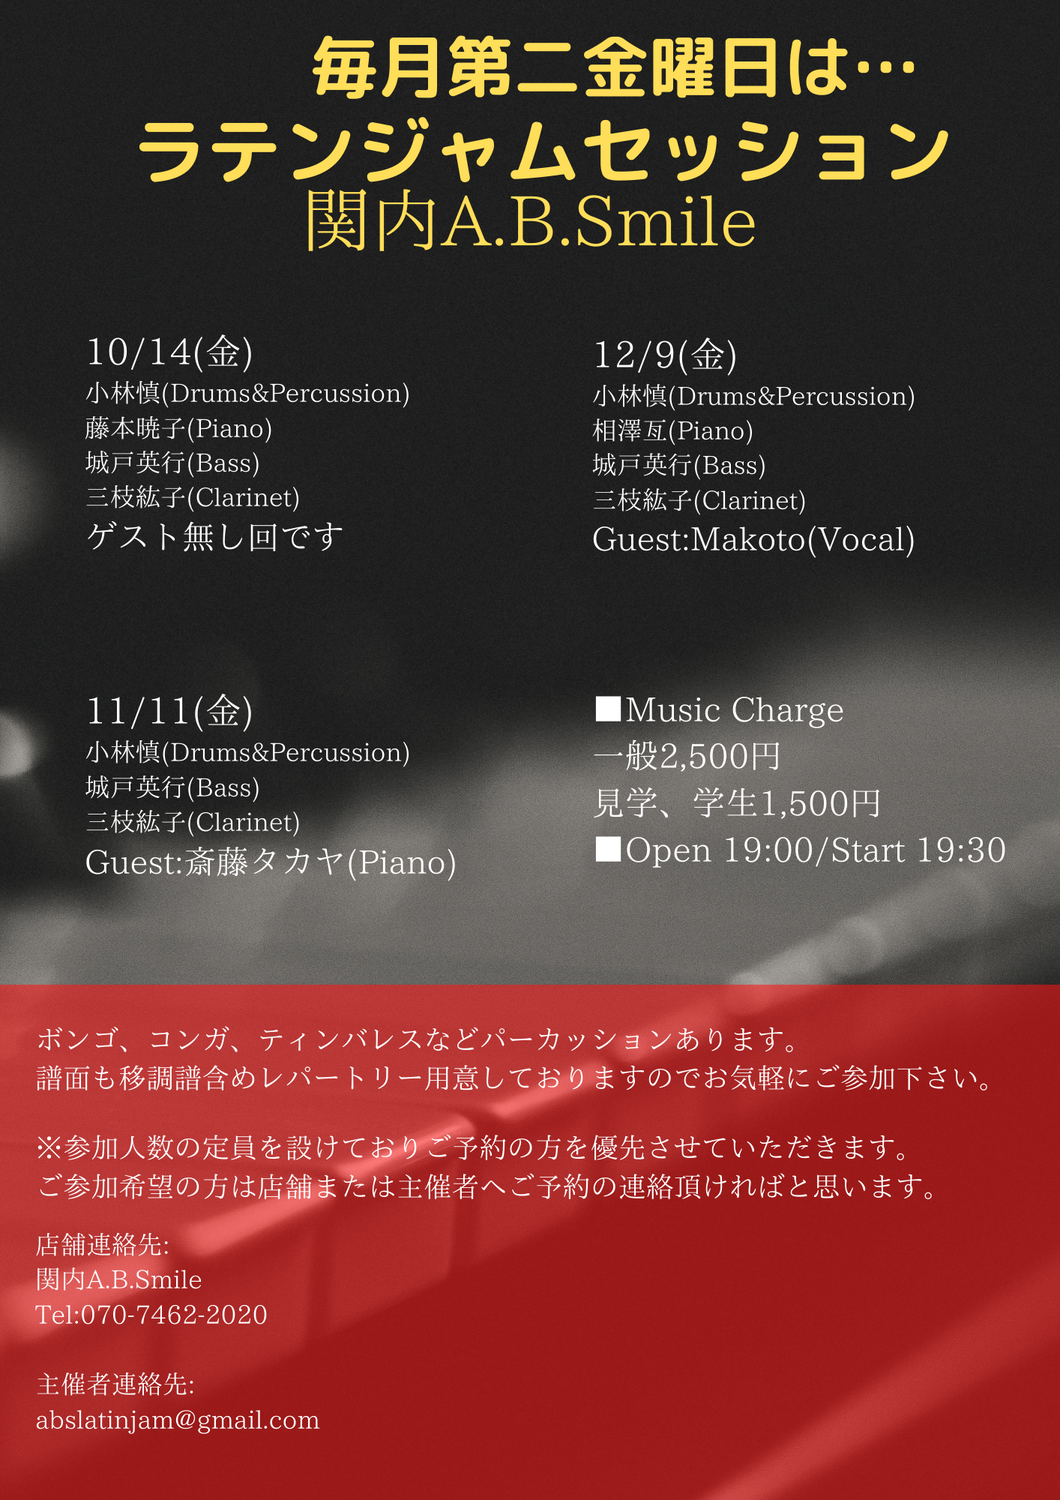 2022/12/9(金)「Latin Jam Session」 @ 関内A.B.Smile